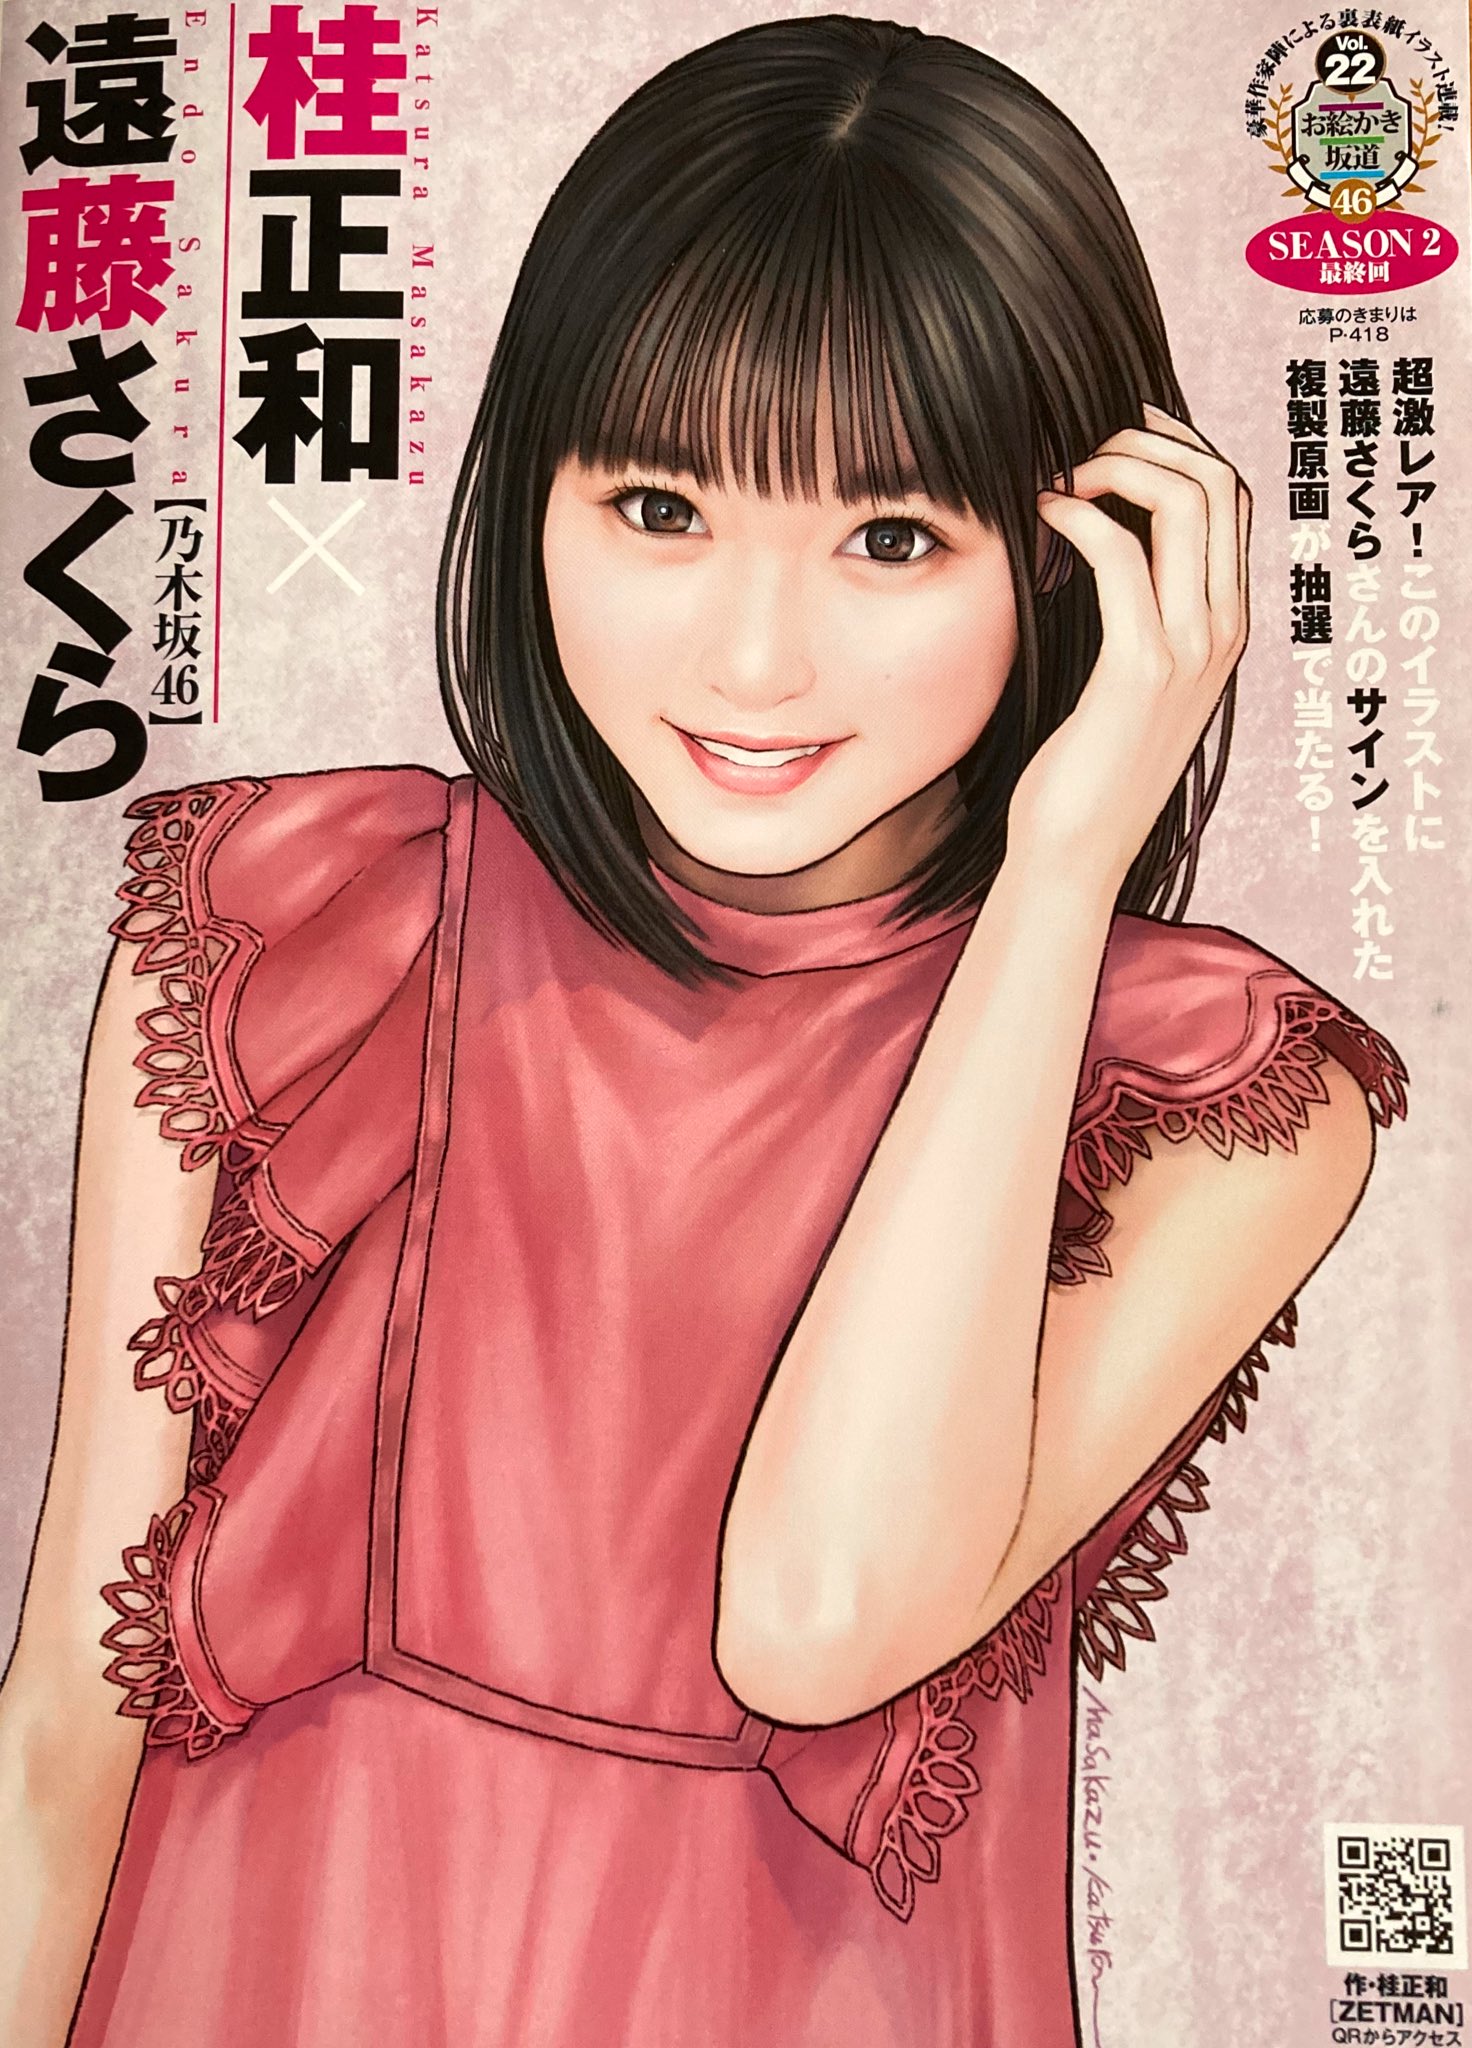 Sakura Endo 遠藤さくら (Nogizaka 46), por Masakazu Katsura